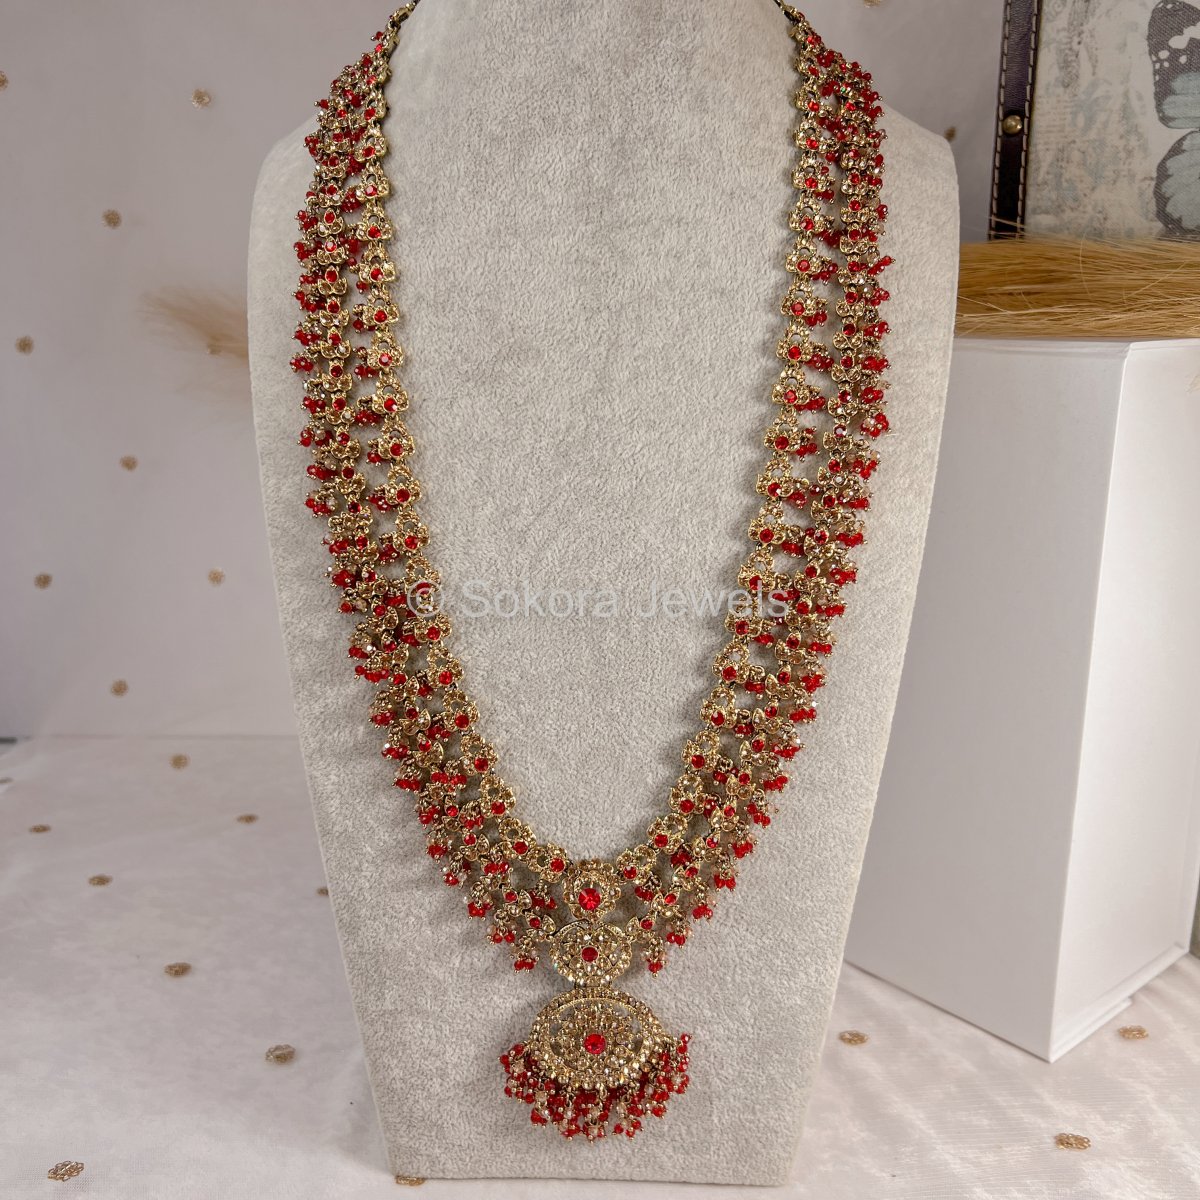 Amulya Long Necklace - Red - SOKORA JEWELSAmulya Long Necklace - Red